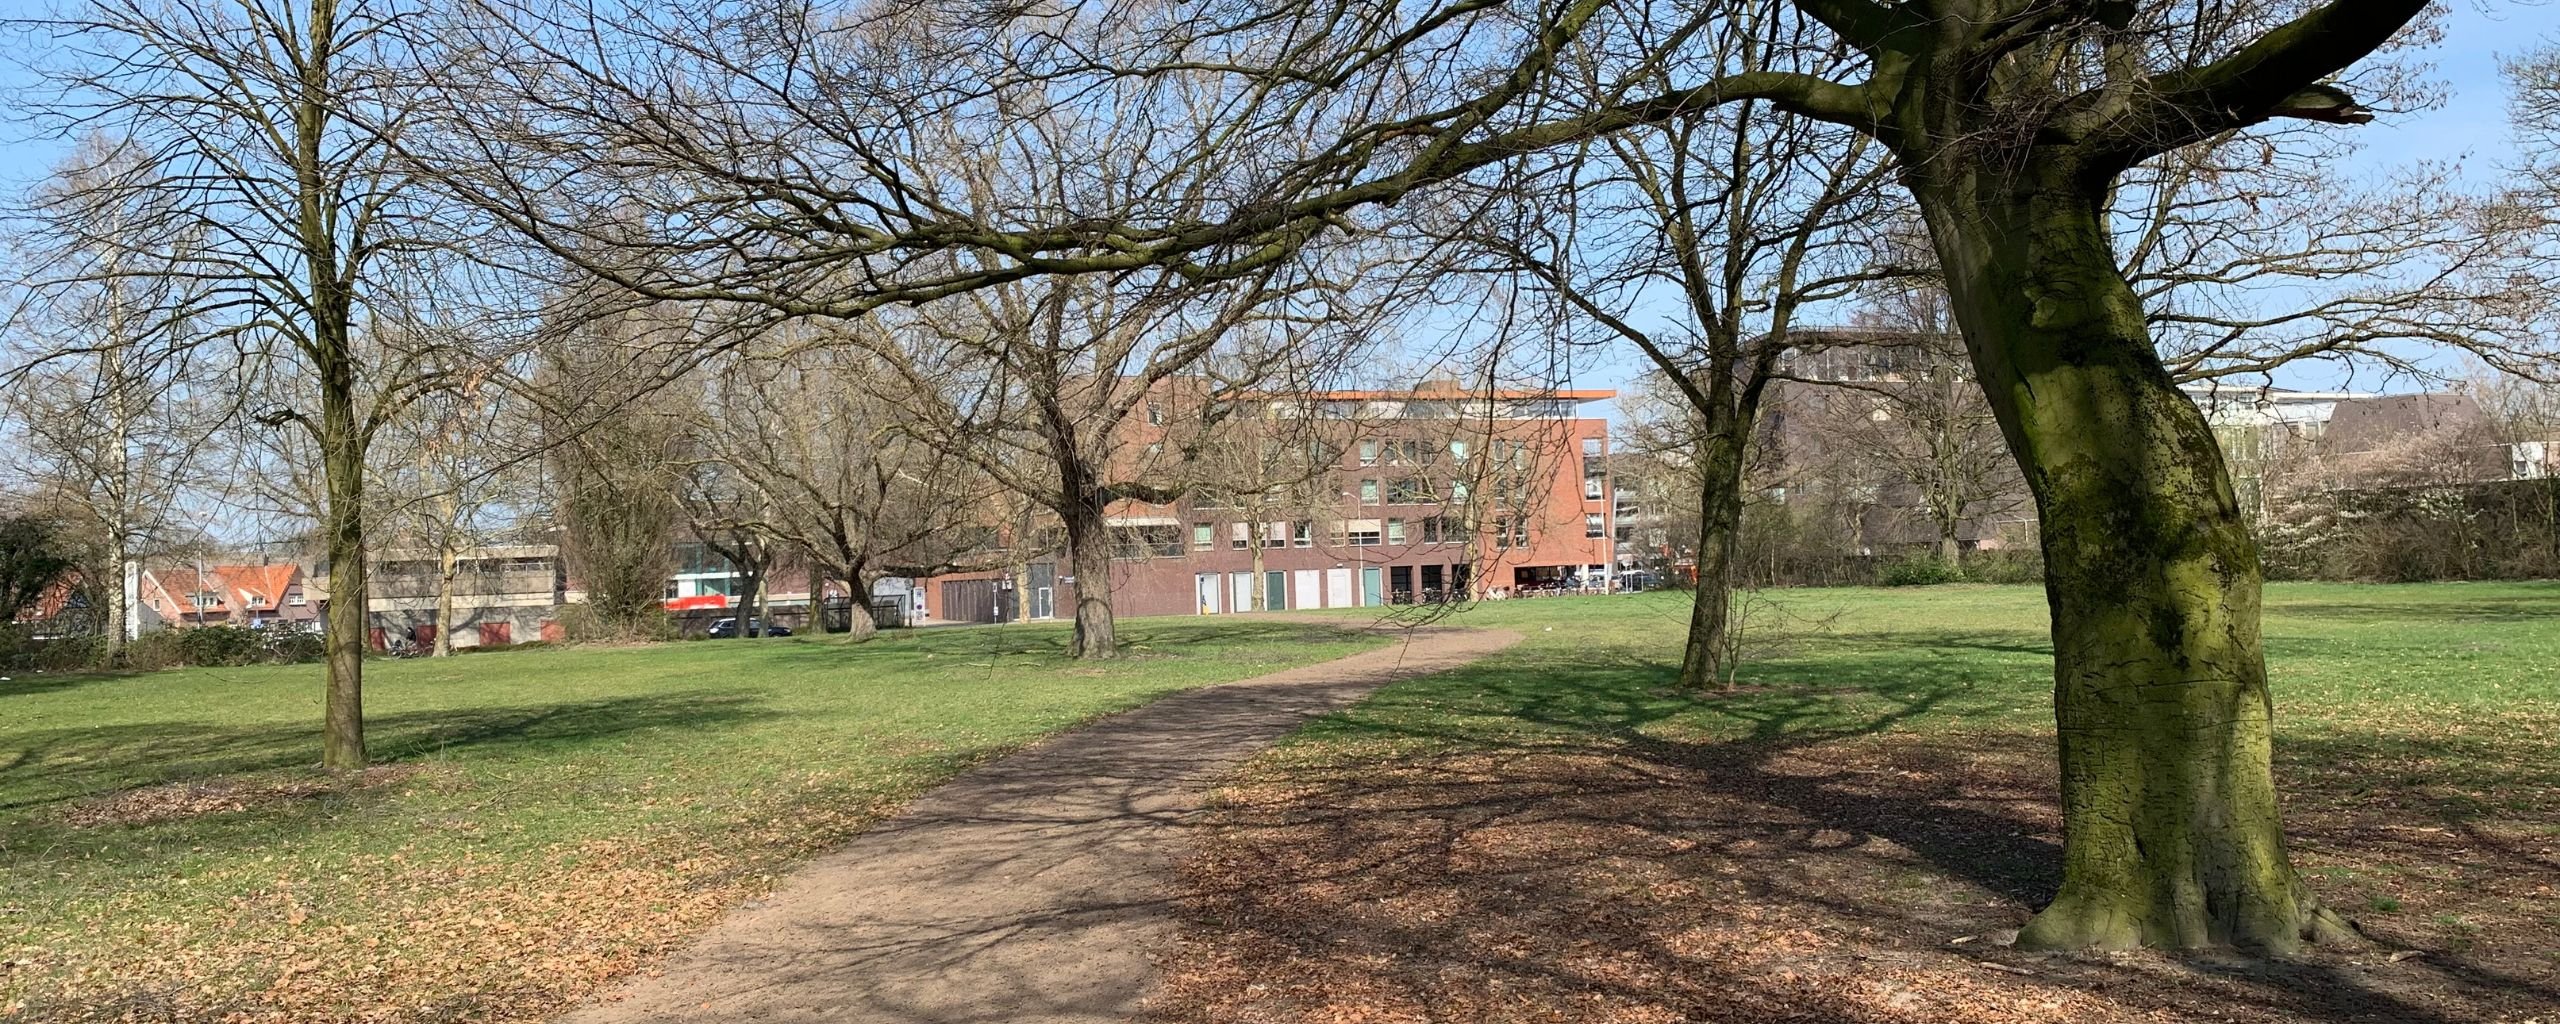 Foto van het terrein aan de Hogeweg in Deurne, om de kale vlakte tussen het Shell-tankstation en het voormalige politiebureau om te toveren tot het Tuinpad Park.